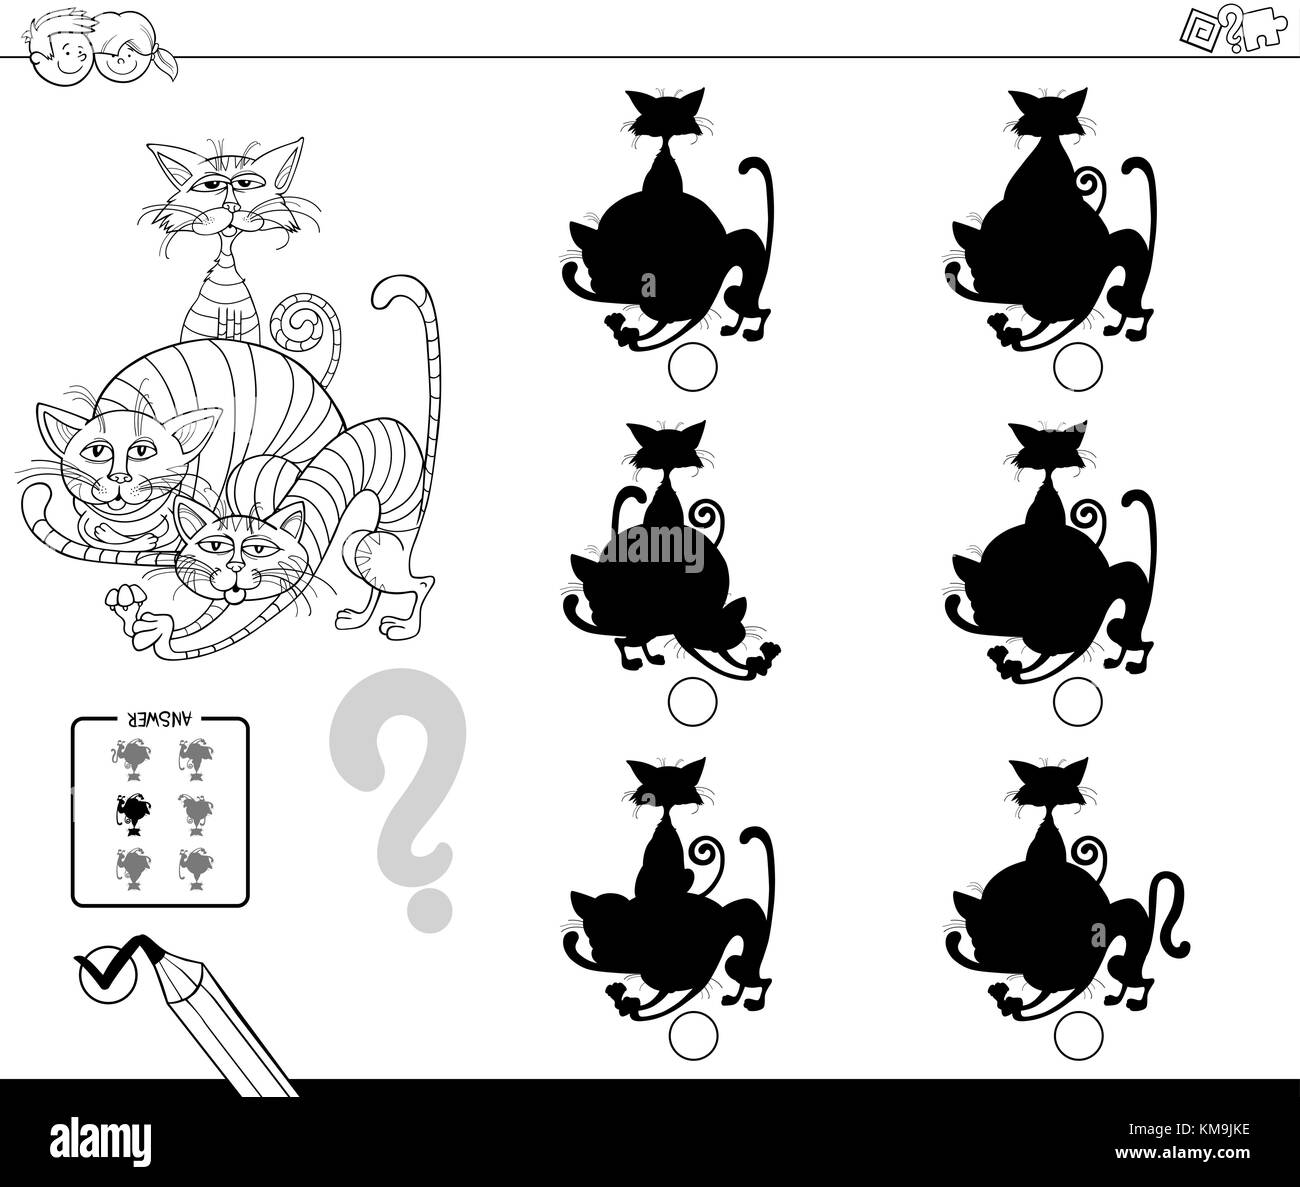 Cartoon noir et blanc illustration de la recherche de l'ombre sans différences activité éducative pour les Enfants avec animaux chats coloriage personnages Illustration de Vecteur